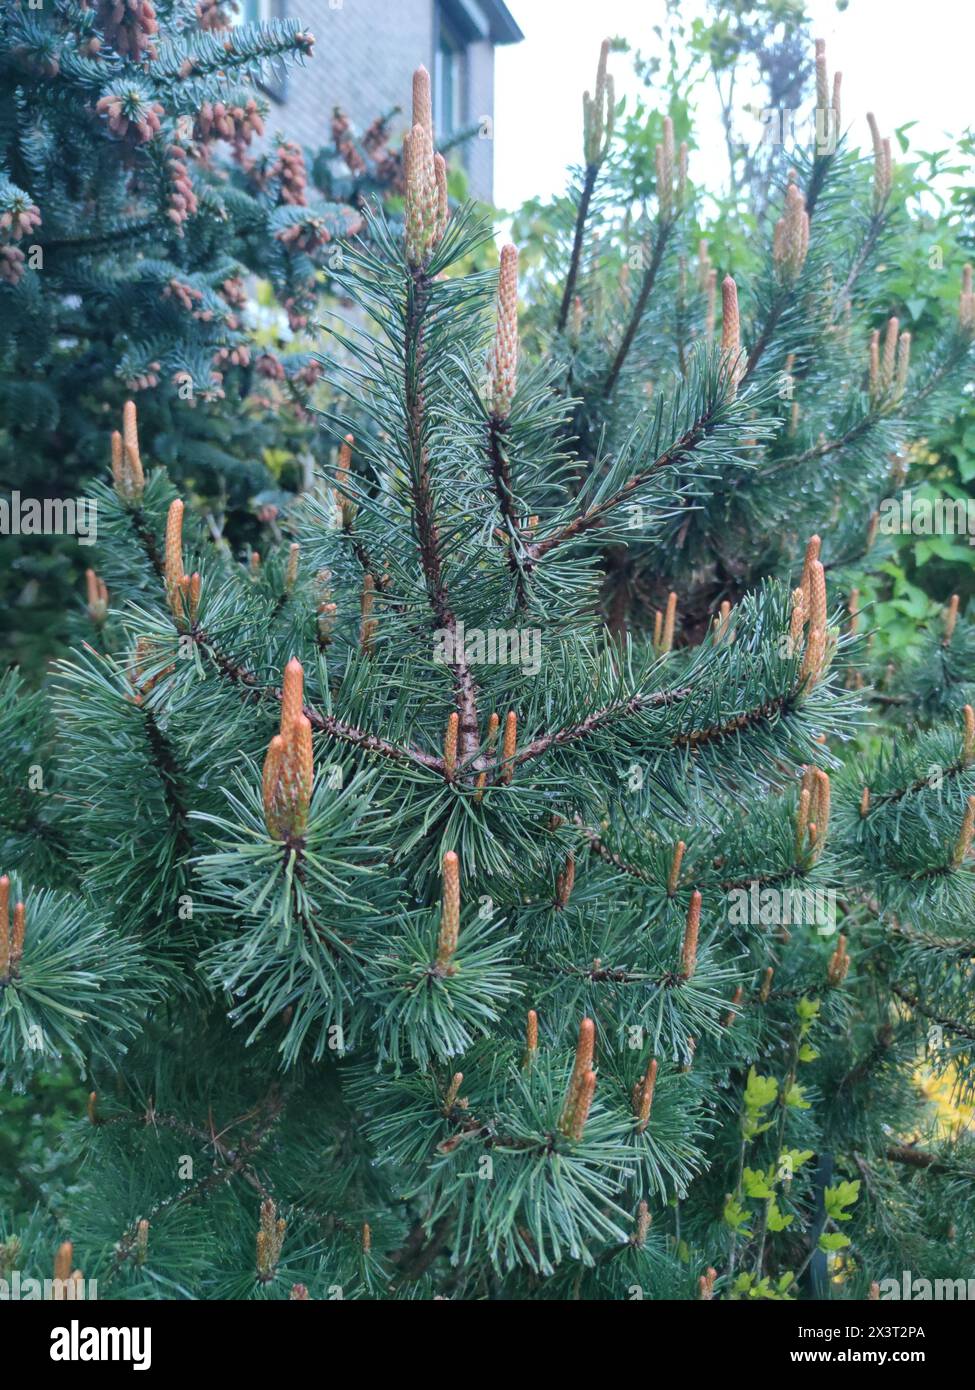 Beautiful young shoots of a dwarf mountain pine (Pinus mugo) in a garden. Stock Photo